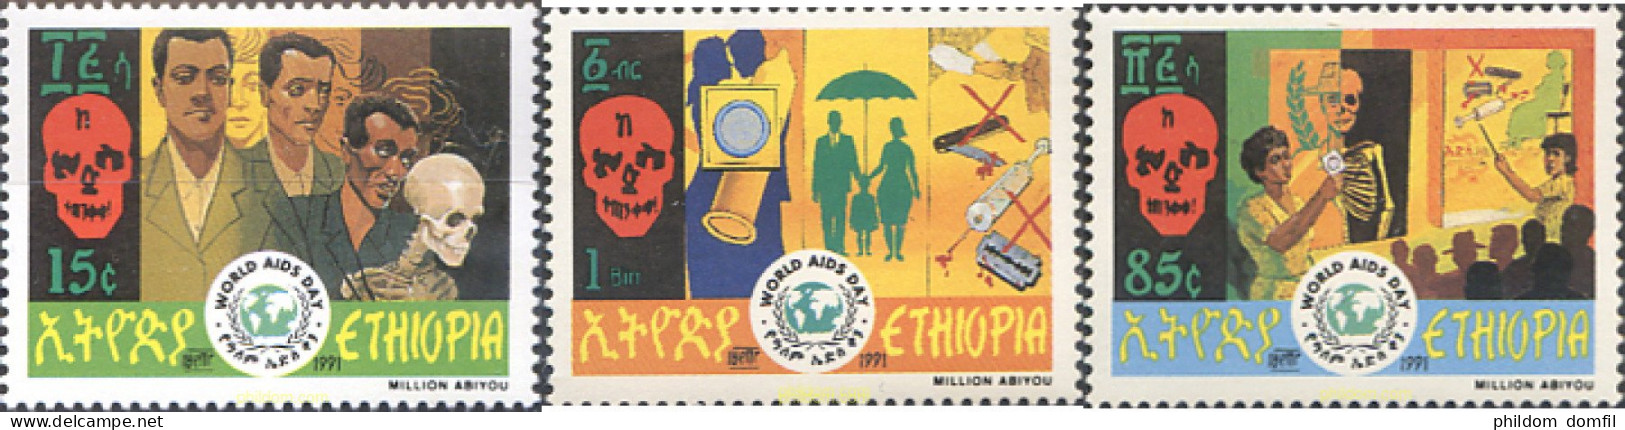 273271 MNH ETIOPIA 1991 DIA MUNDIAL DEL SIDA - Ethiopie